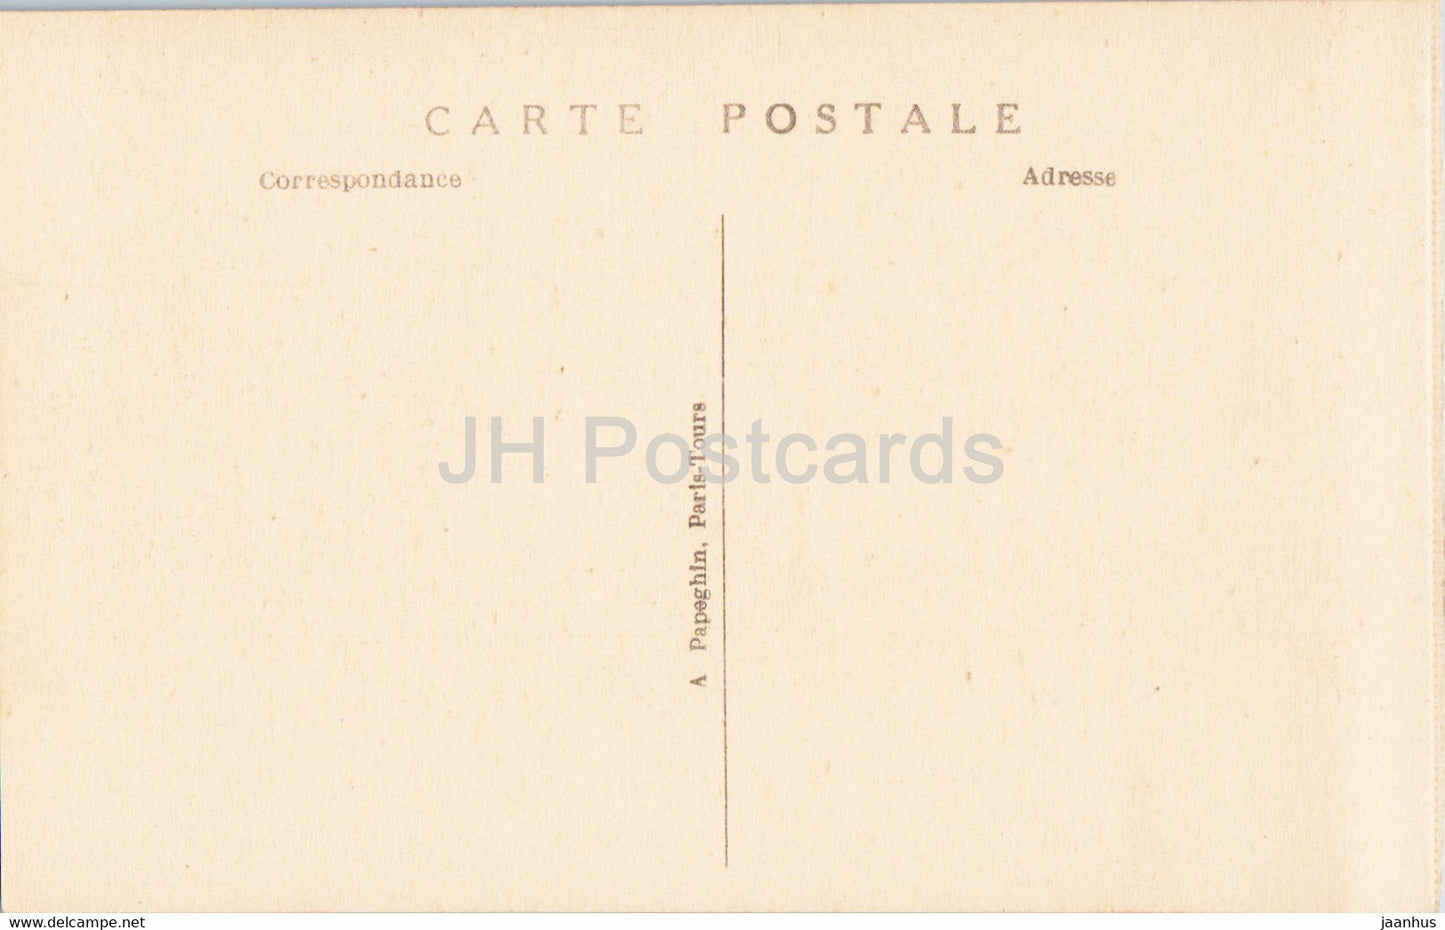 Versailles - Le Palais - Salon de l'Ceil de Boeuf - 49 - alte Postkarte - Frankreich - unbenutzt